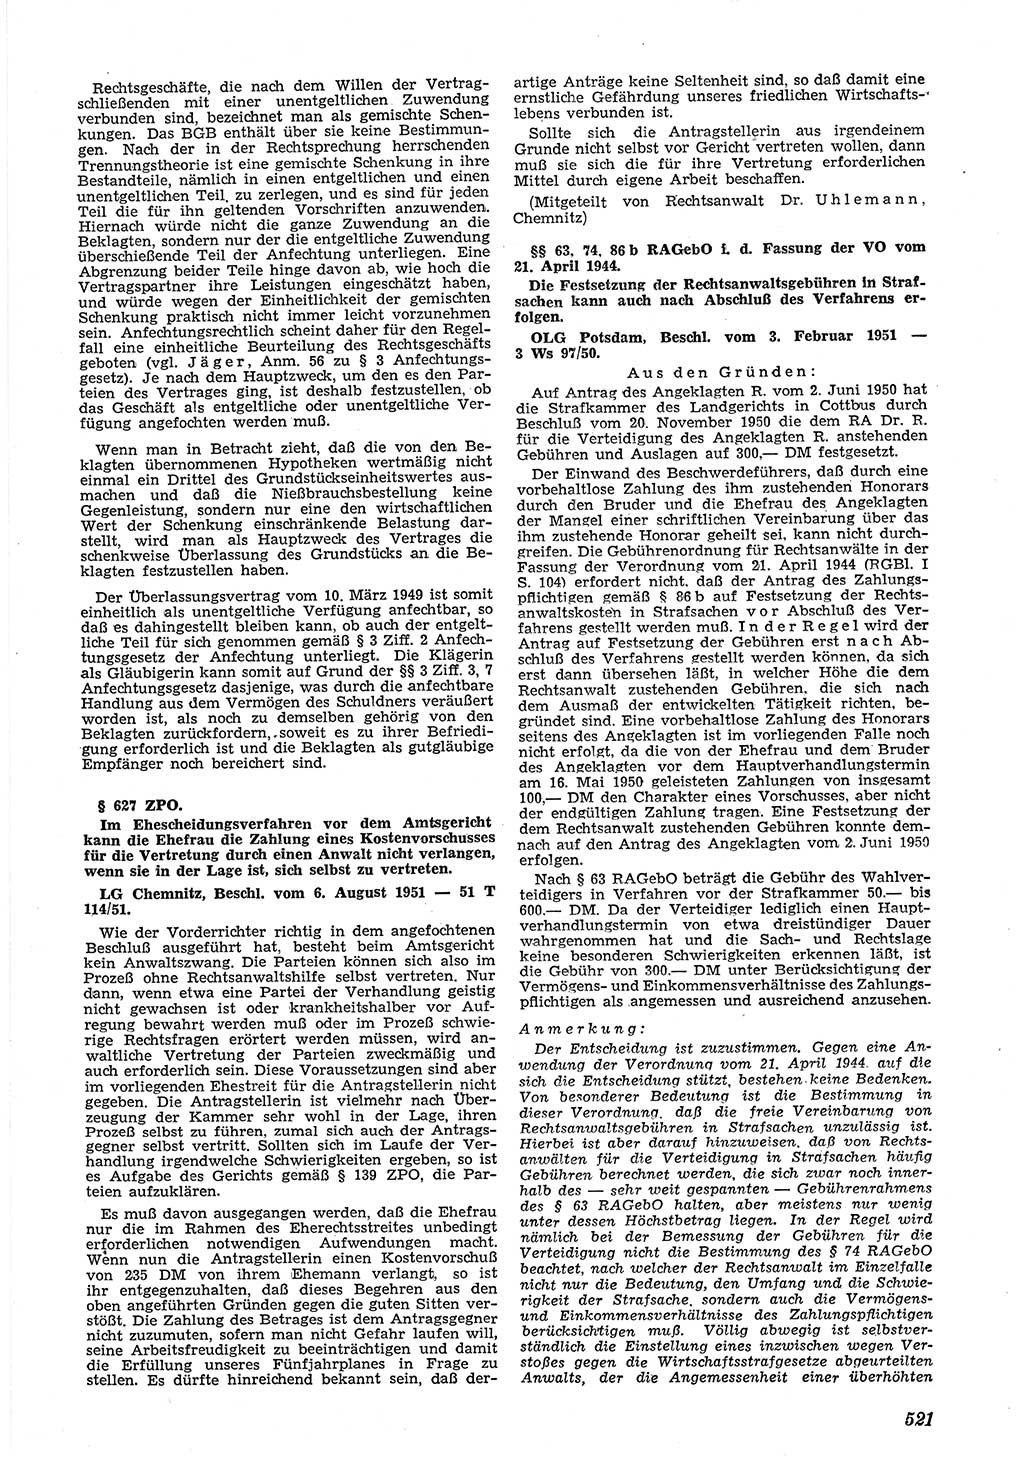 Neue Justiz (NJ), Zeitschrift für Recht und Rechtswissenschaft [Deutsche Demokratische Republik (DDR)], 5. Jahrgang 1951, Seite 521 (NJ DDR 1951, S. 521)